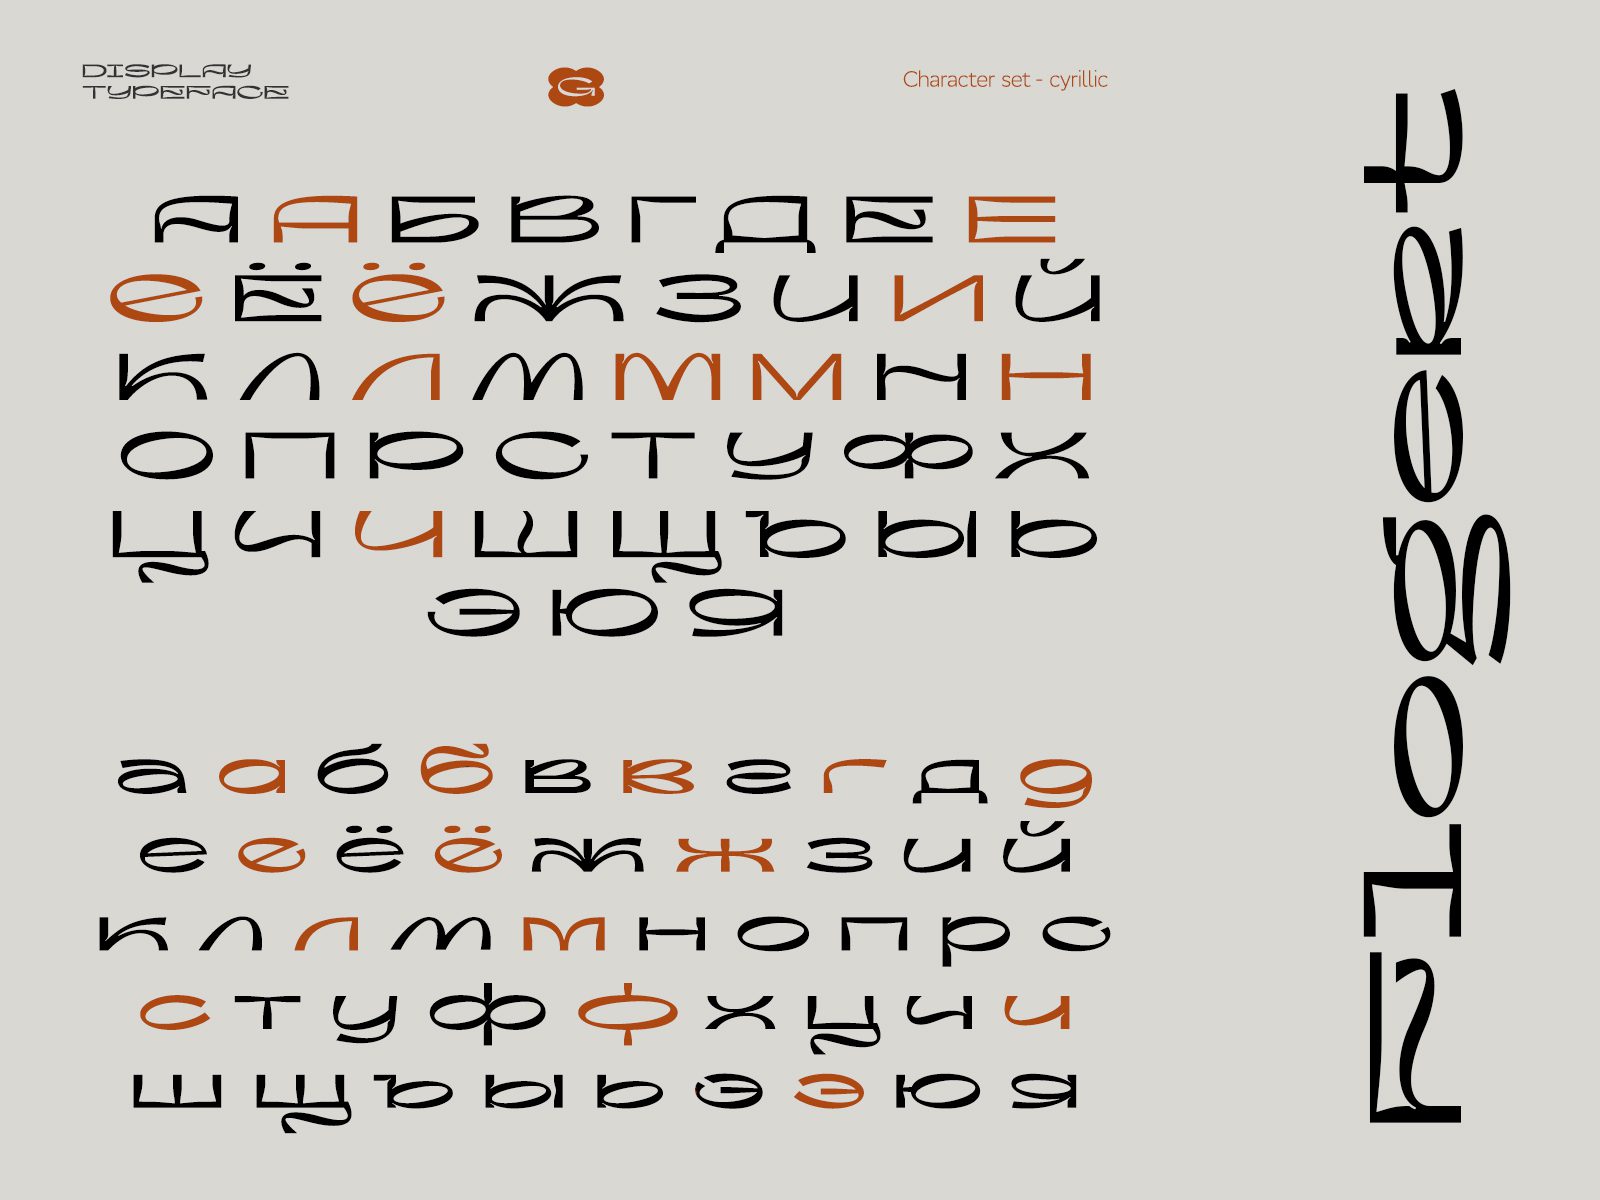 高质量现代酸性艺术抽象图形风格海报杂志排版英文字体 Flogert Display Typeface 设计素材 第9张